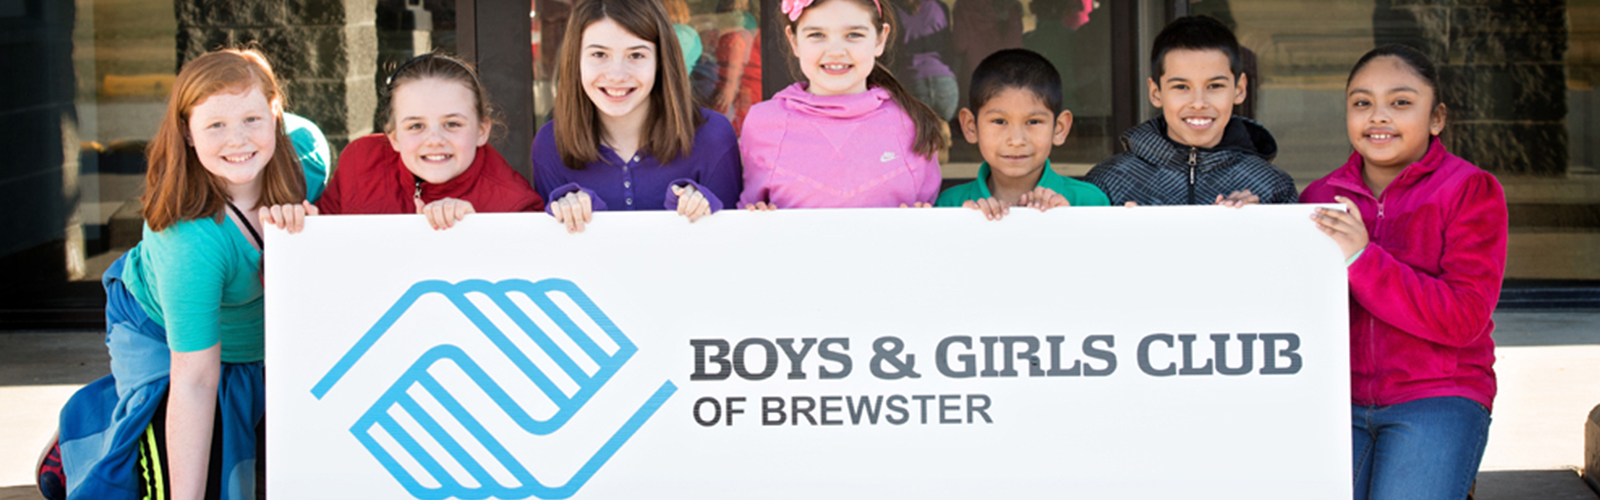 Brewster Boys & Girls Club